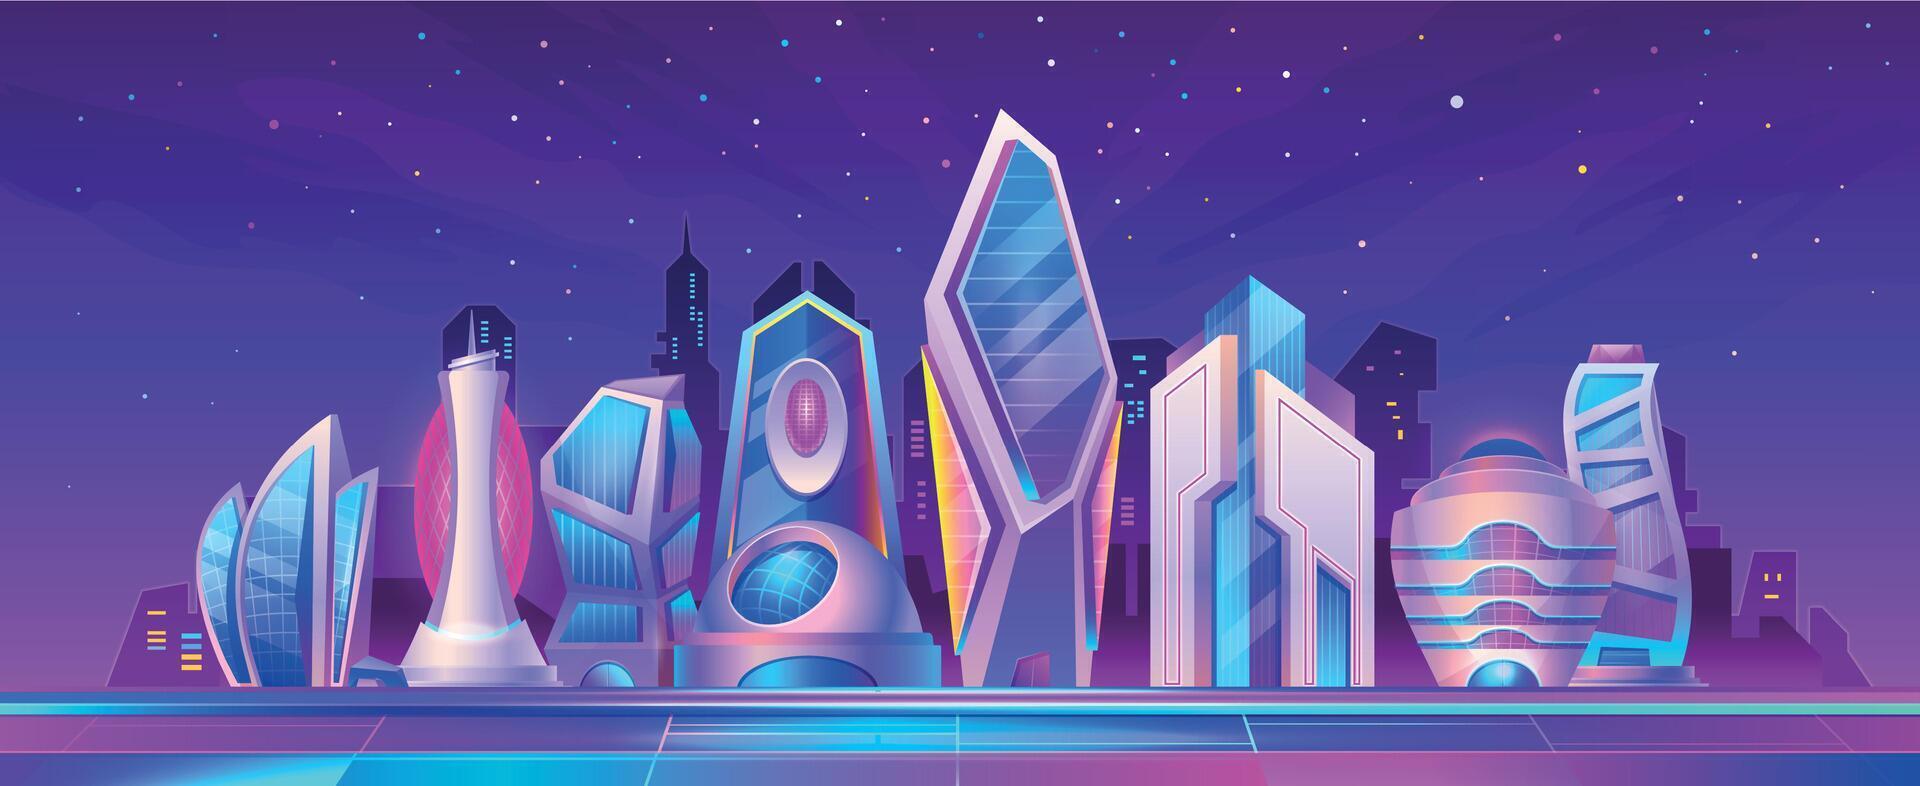 tekenfilm futuristische stad nacht landschap met neon licht. cyberpunk toekomst metropolis straat met wolkenkrabbers. fictie stadsgezicht vector tafereel